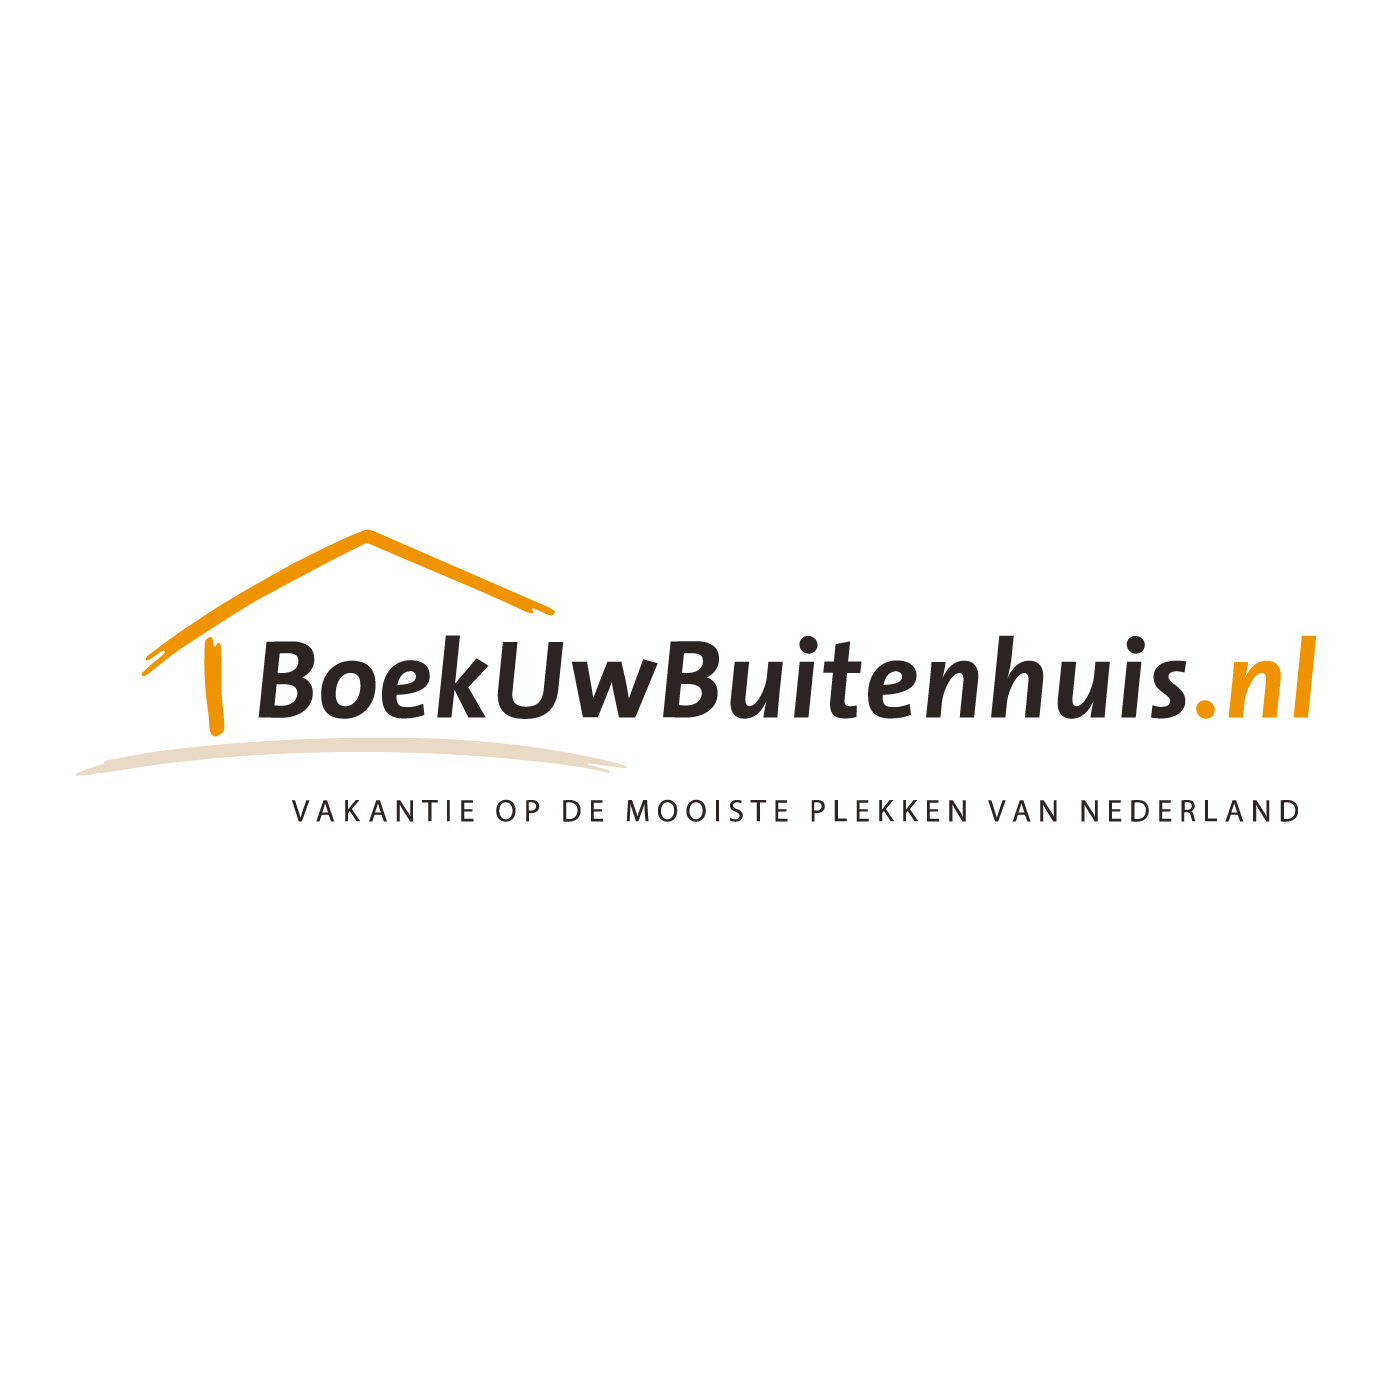 BoekUwBuitenhuis.nl reviews, beoordelingen en ervaringen